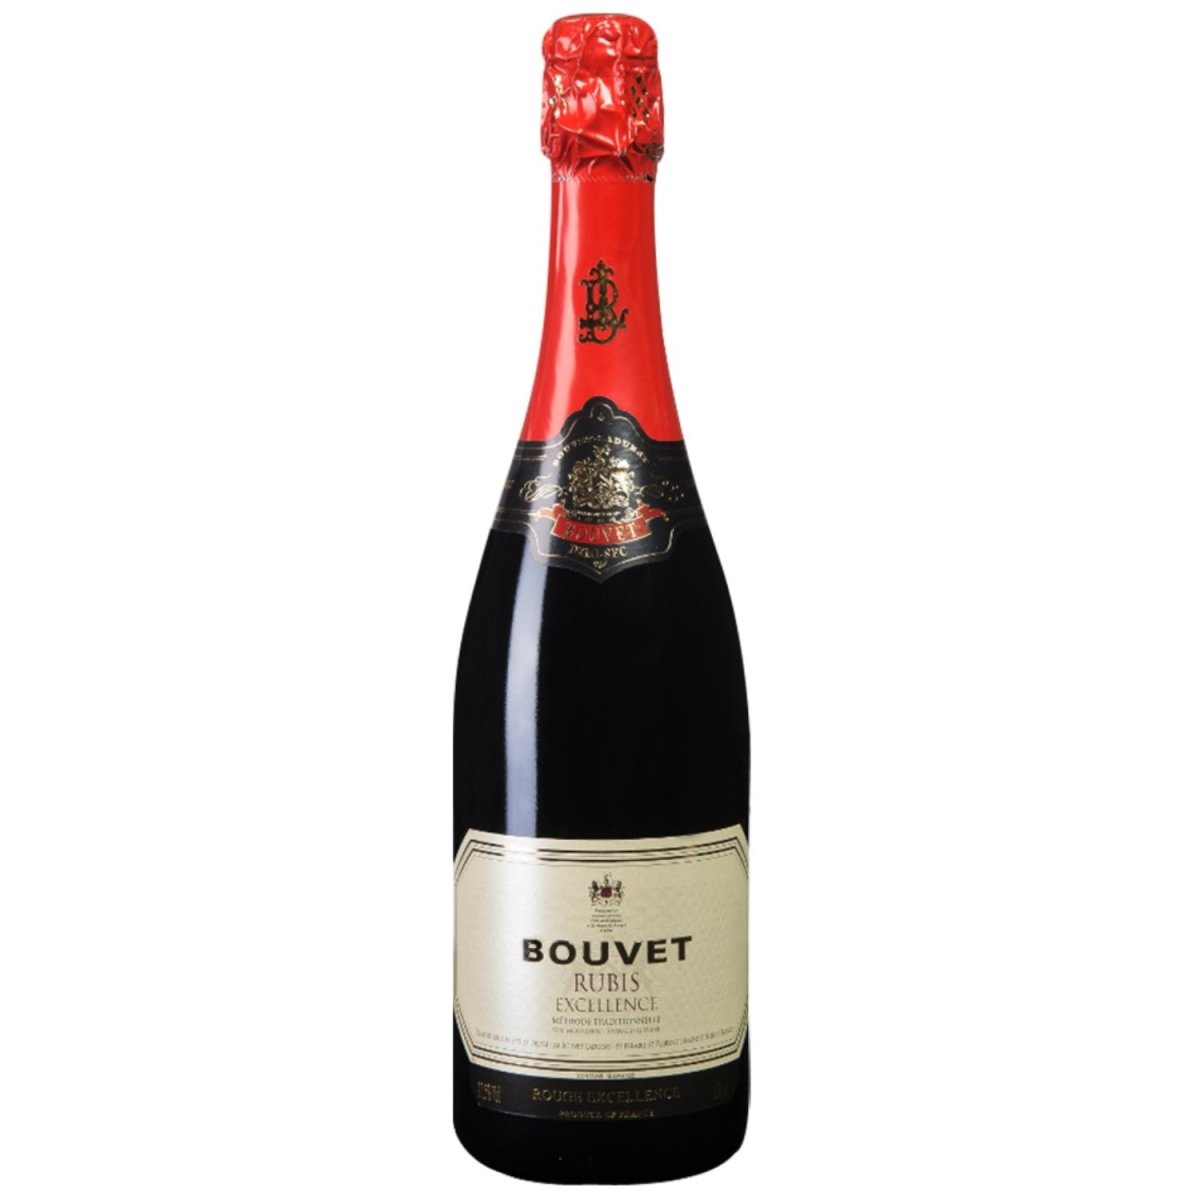 Bouvet Rubis Excellence Rouge Rot Schaumwein Demi-sec Méthode traditionelle vegan Frankreich (12 x 0,75 l) - Versanel -